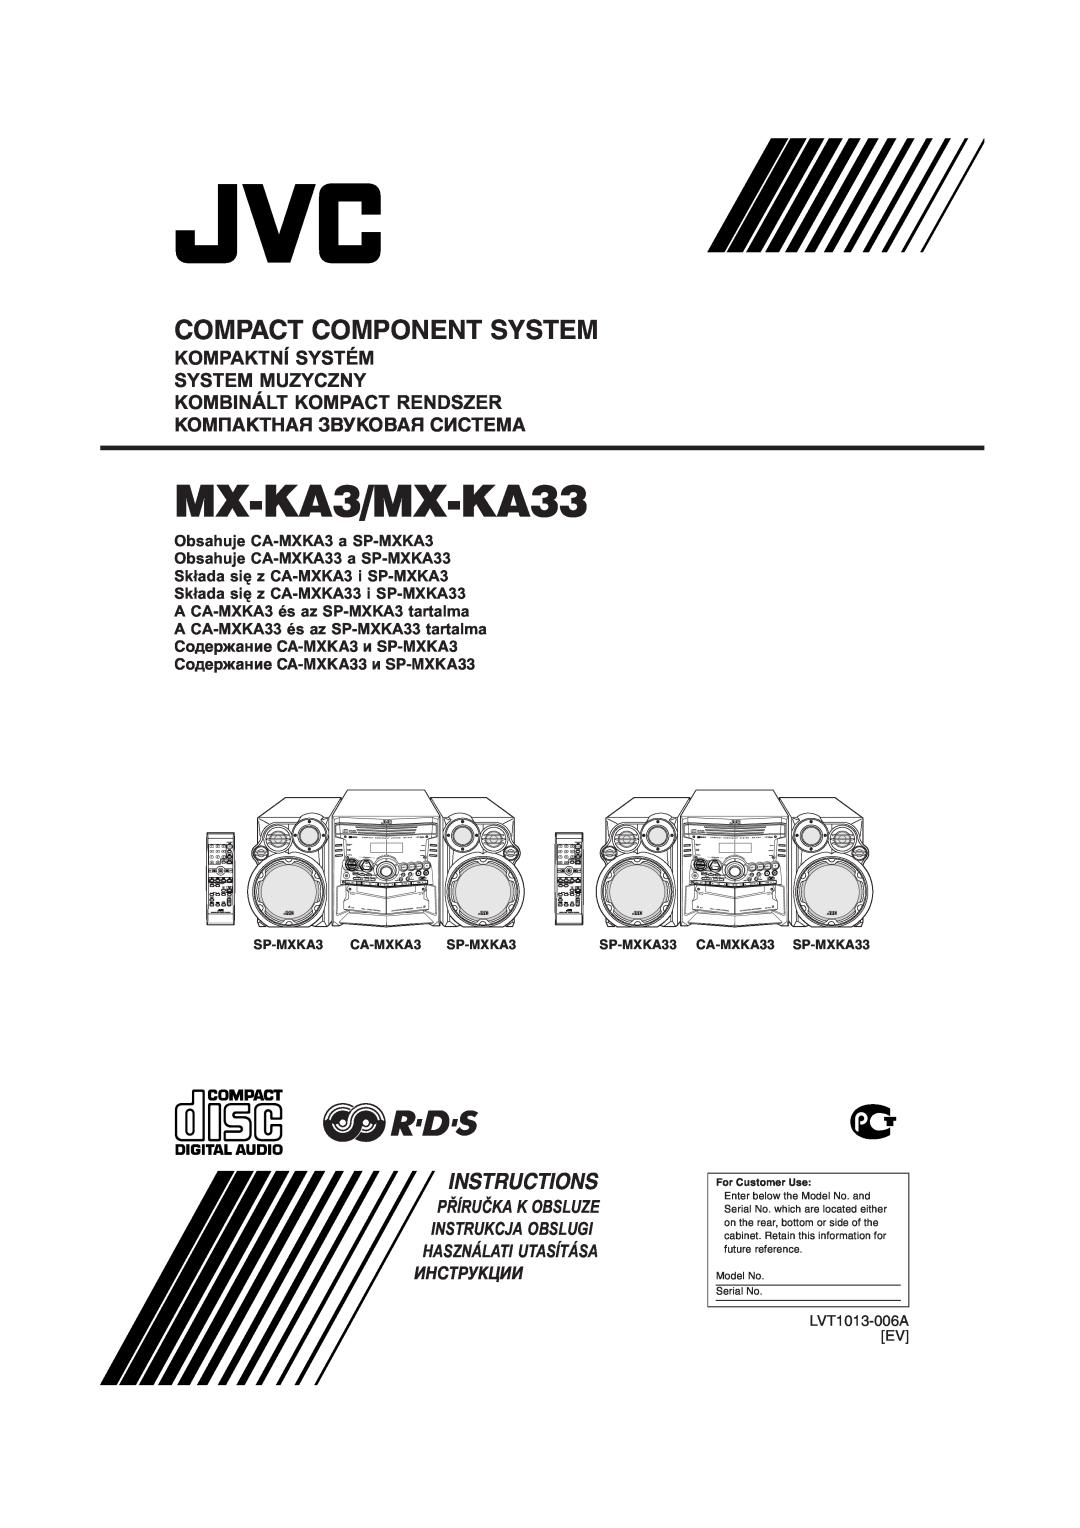 JVC manual Kompaktní Systém System Muzyczny, MX-KA3/MX-KA33, Compact Component System, Instructions, PŘĺRUČKA K OBSLUZE 